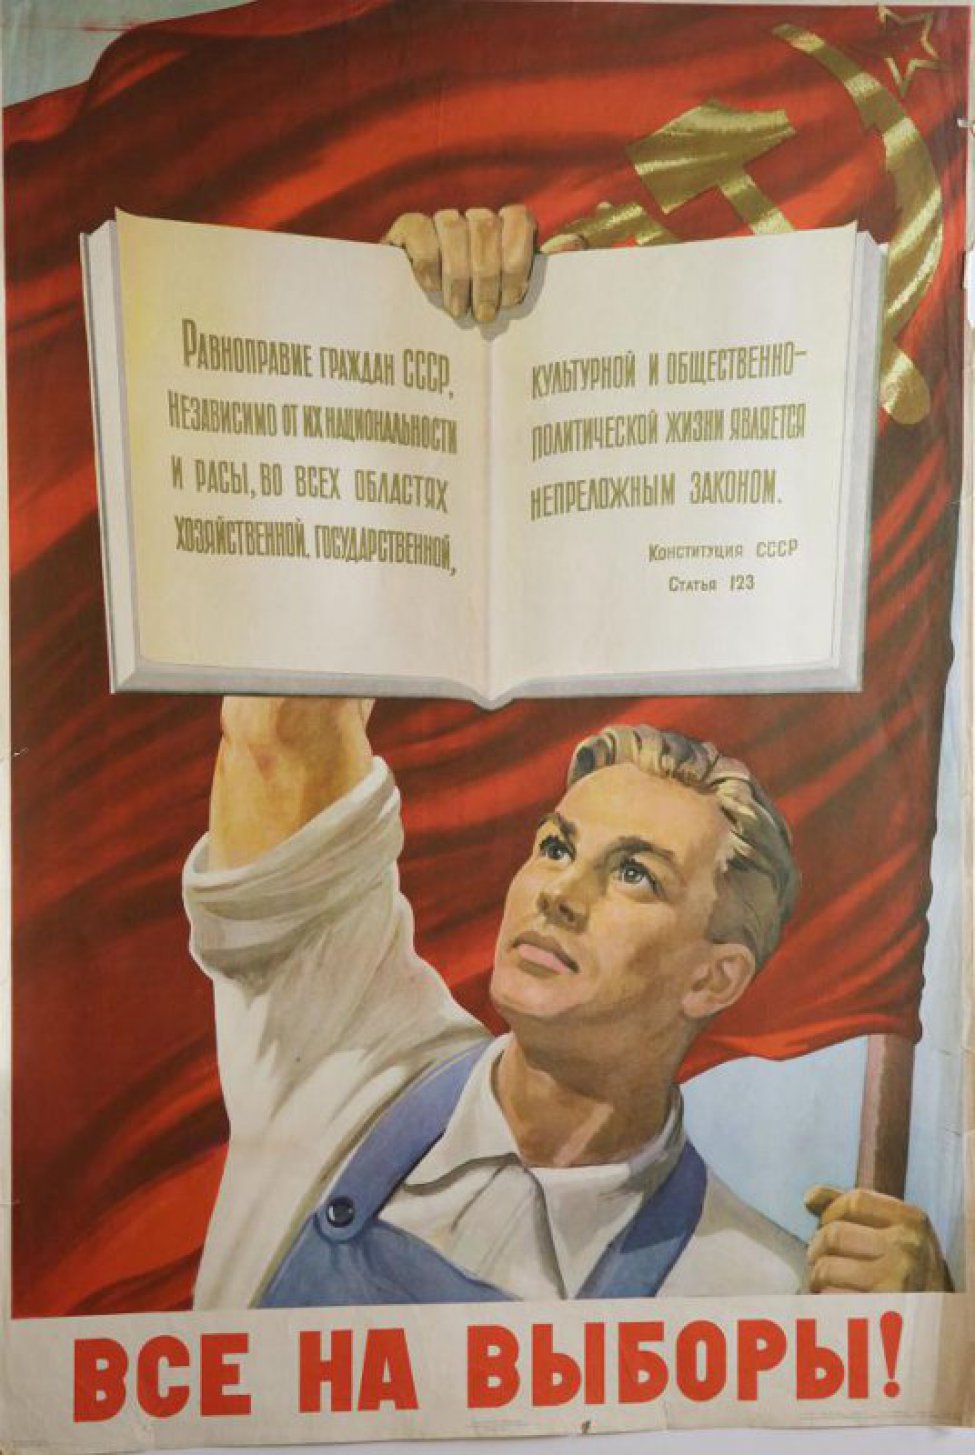 Изображен погрудно рабочий в синем комбинезоне и белой рубашке. В одной руке он держит красное знамя, в другой открытую книгу Конституции со статьей 123.